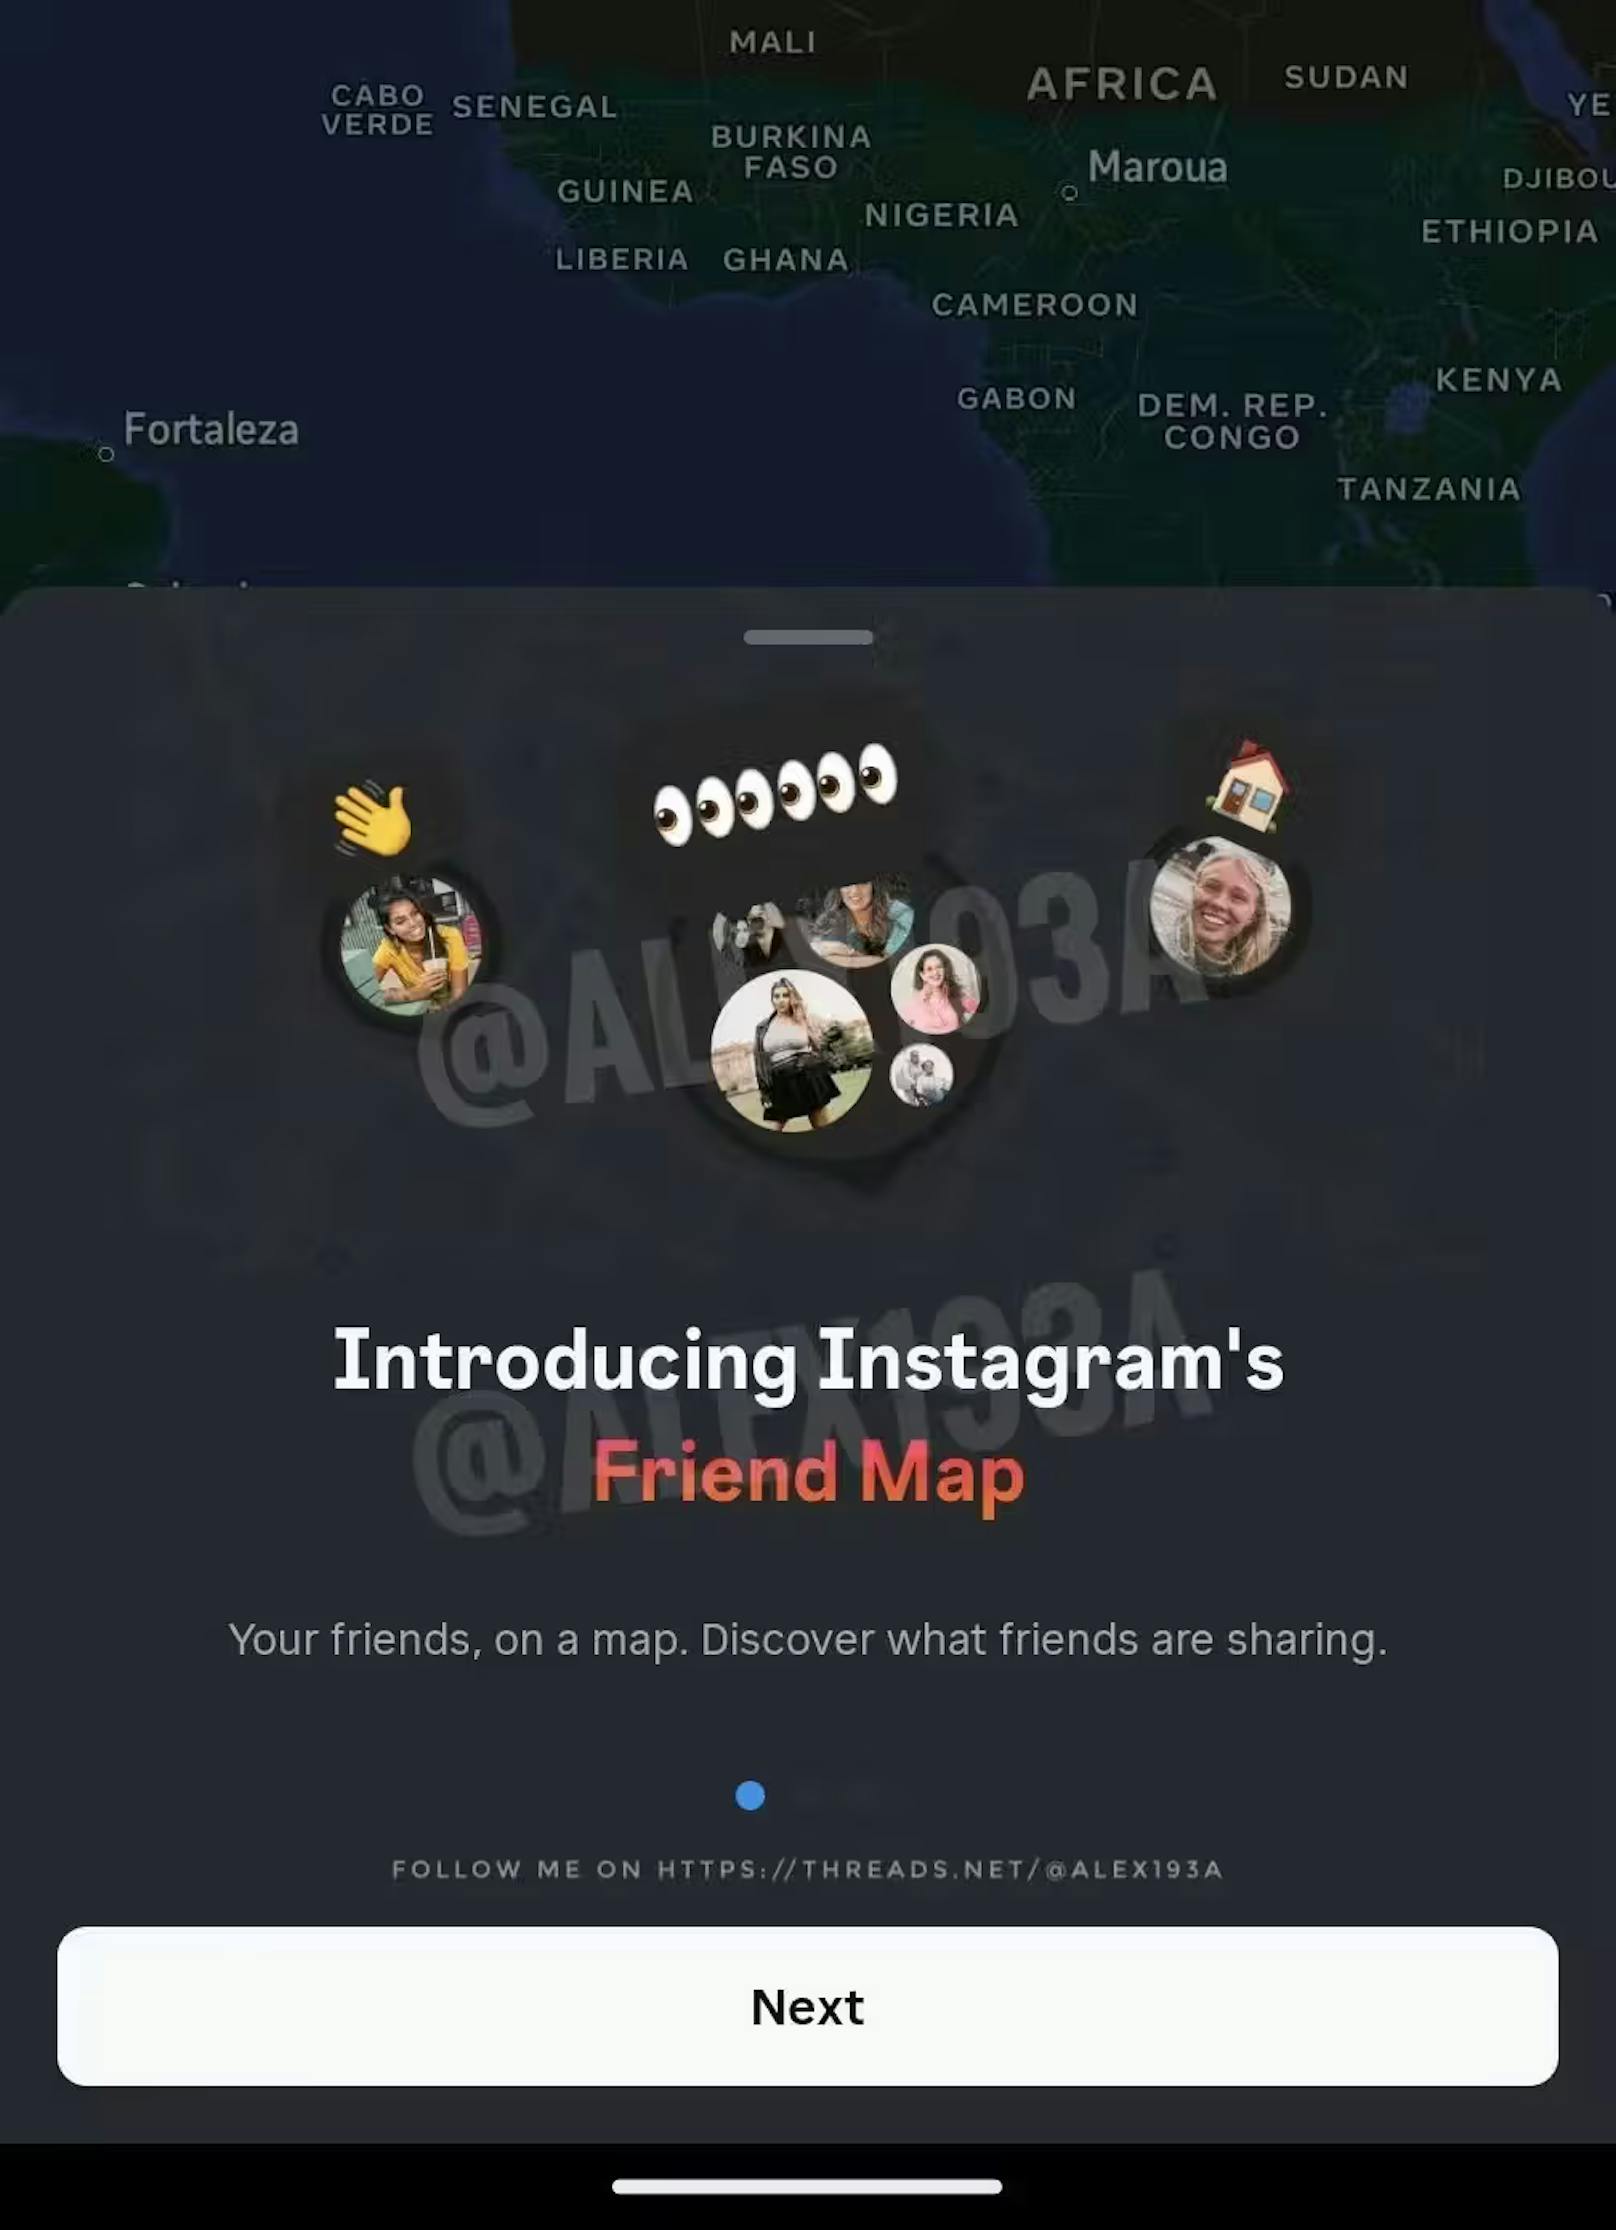 Die Instagram-Entwickler tüfteln offenbar an einem Karten-Feature, wie ein Web-Entwickler enthüllt.